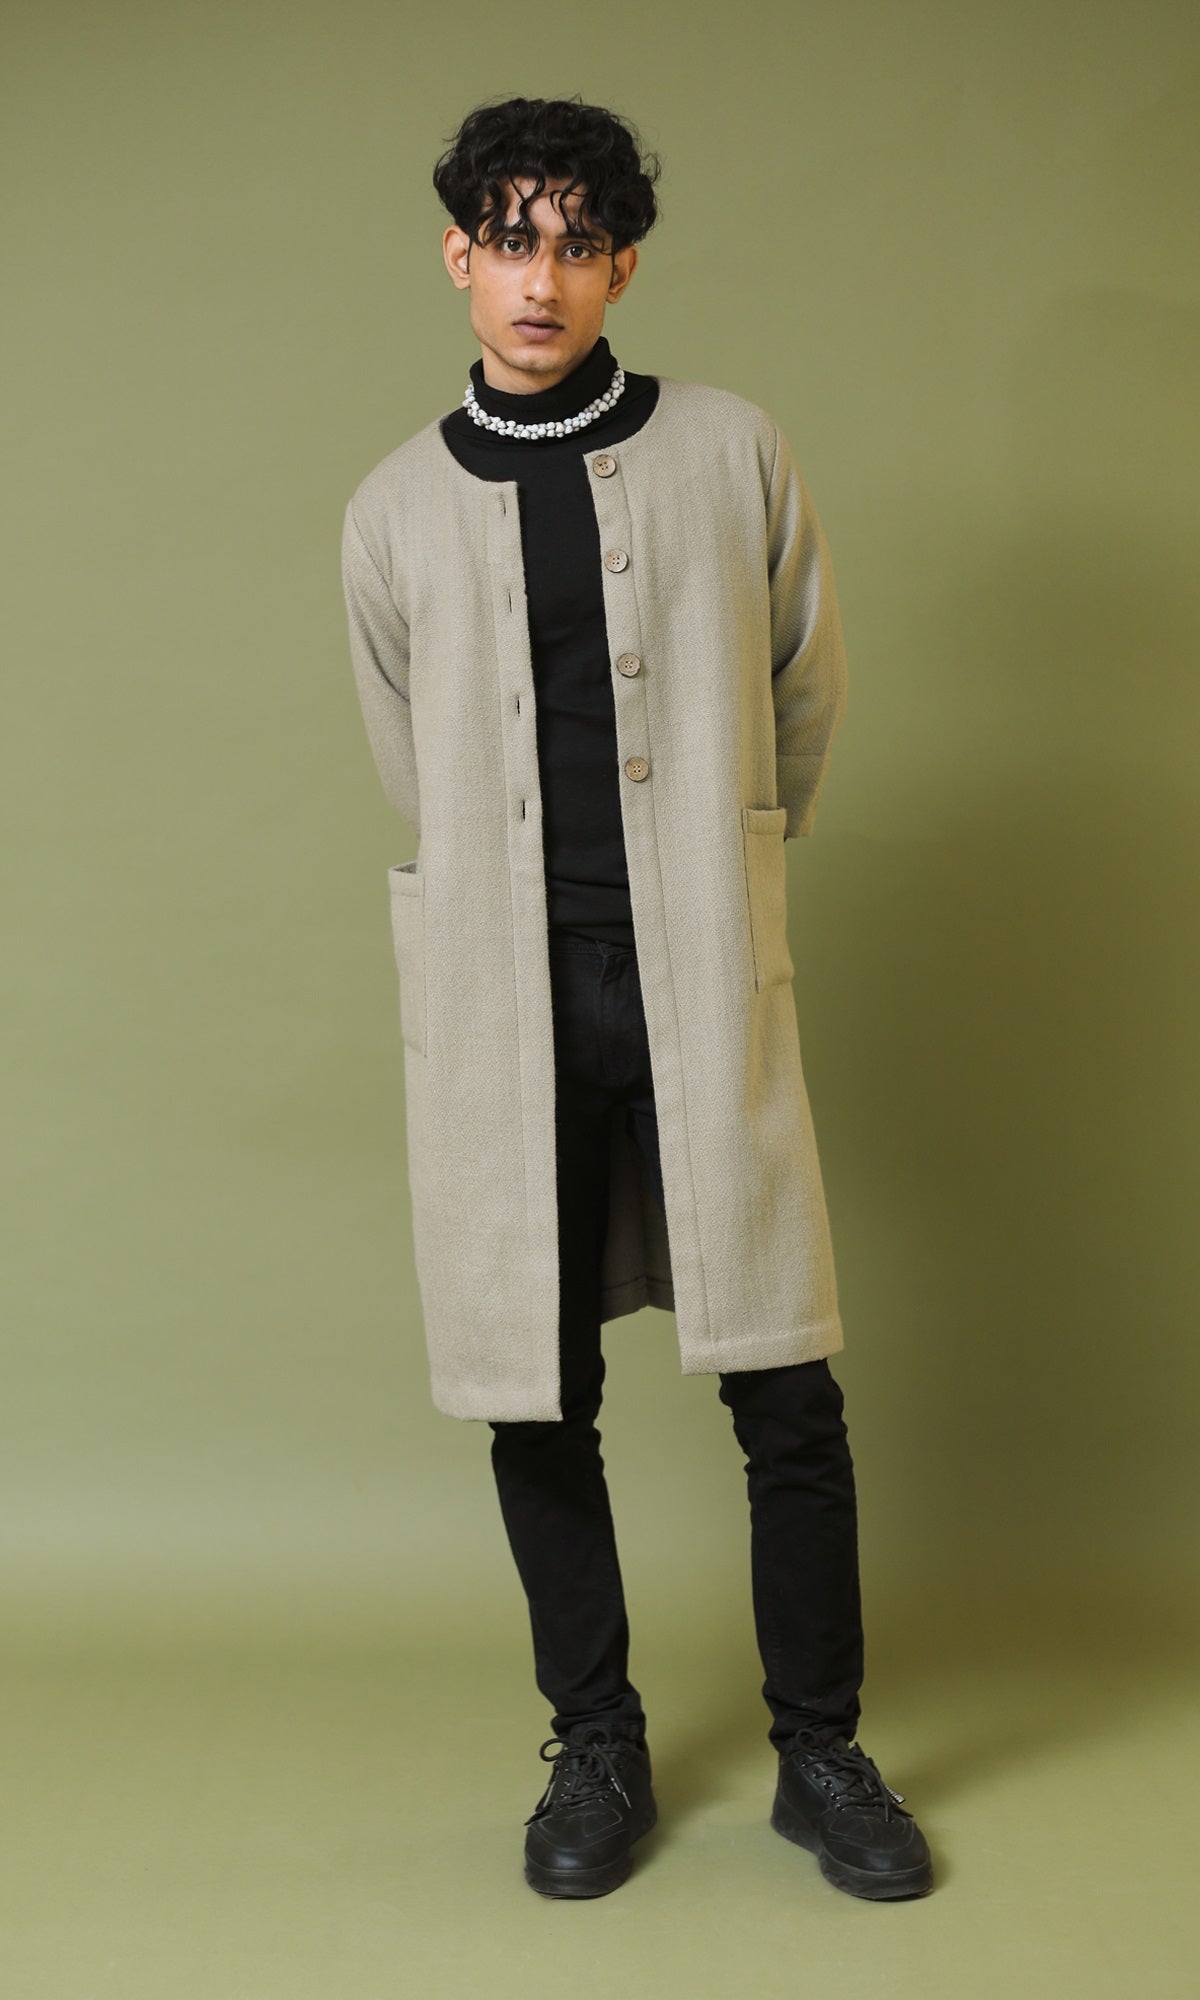 Heer Grey Handwoven Woollen A-line Long Jacket with Sleeves